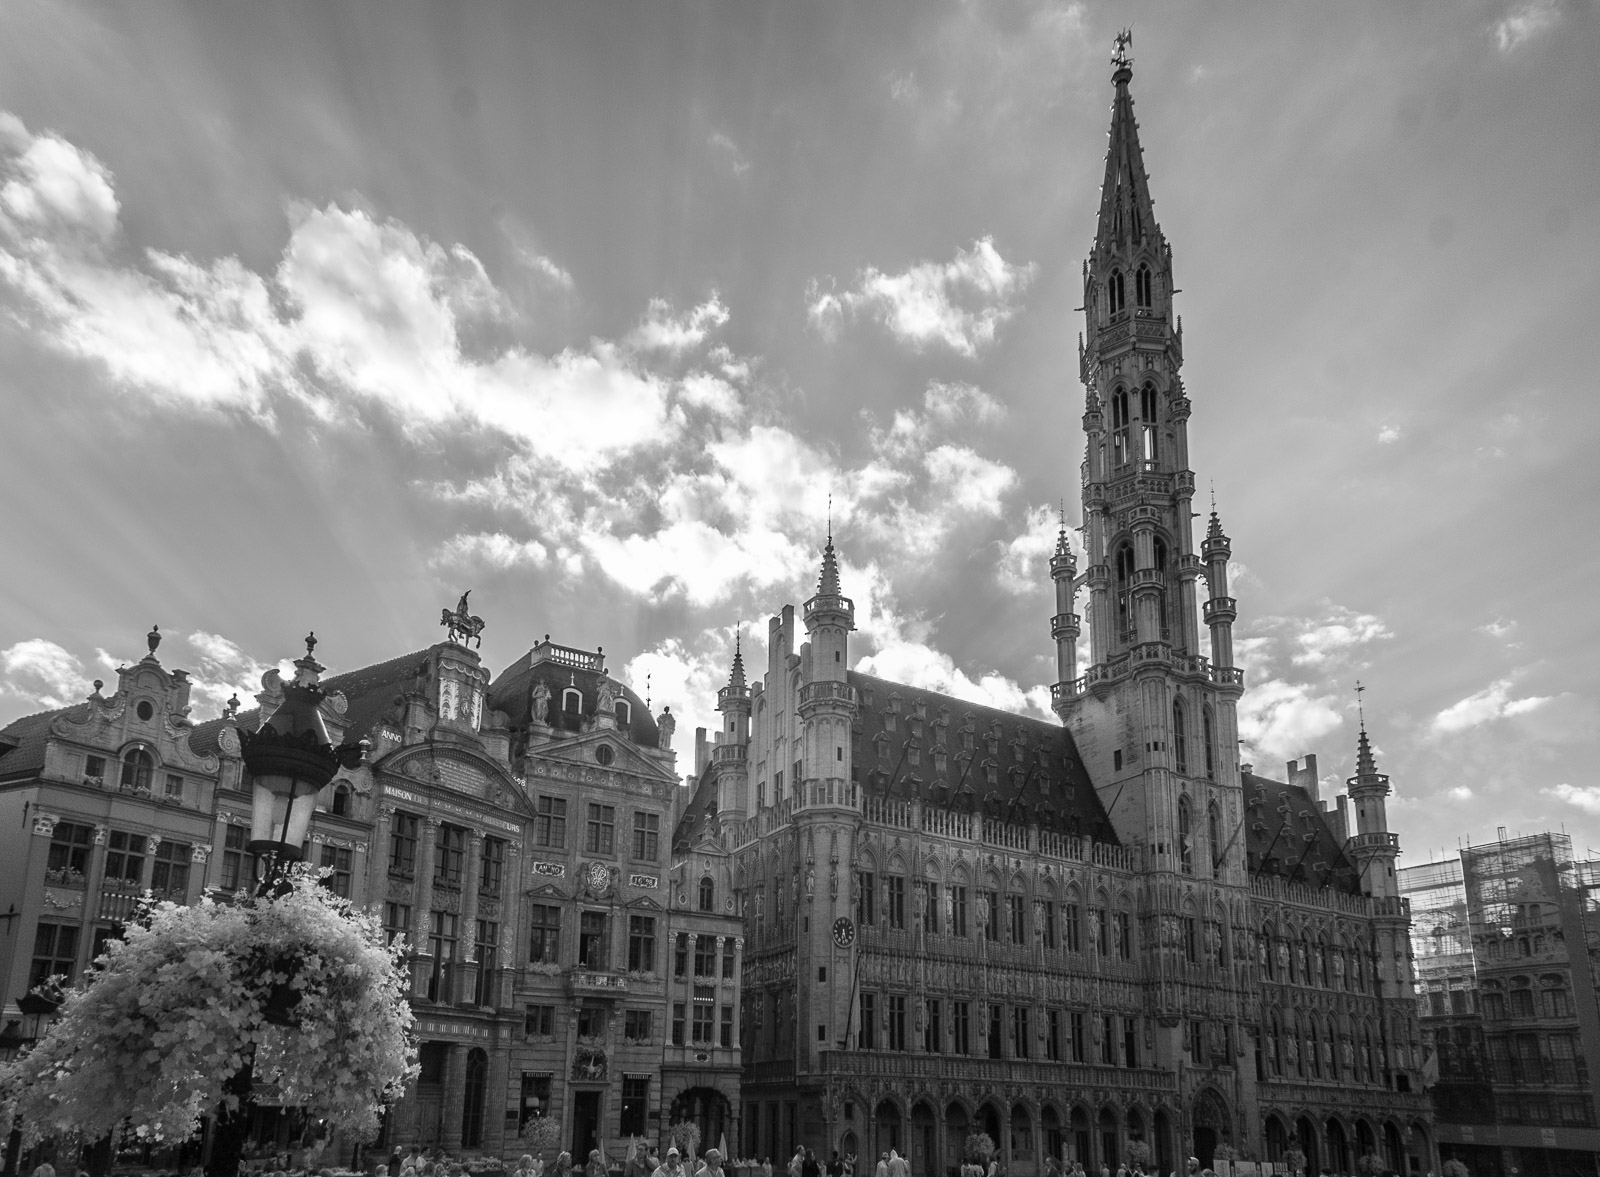 Momentka z Bruselu - fotogarfováno v infračerveném spektru